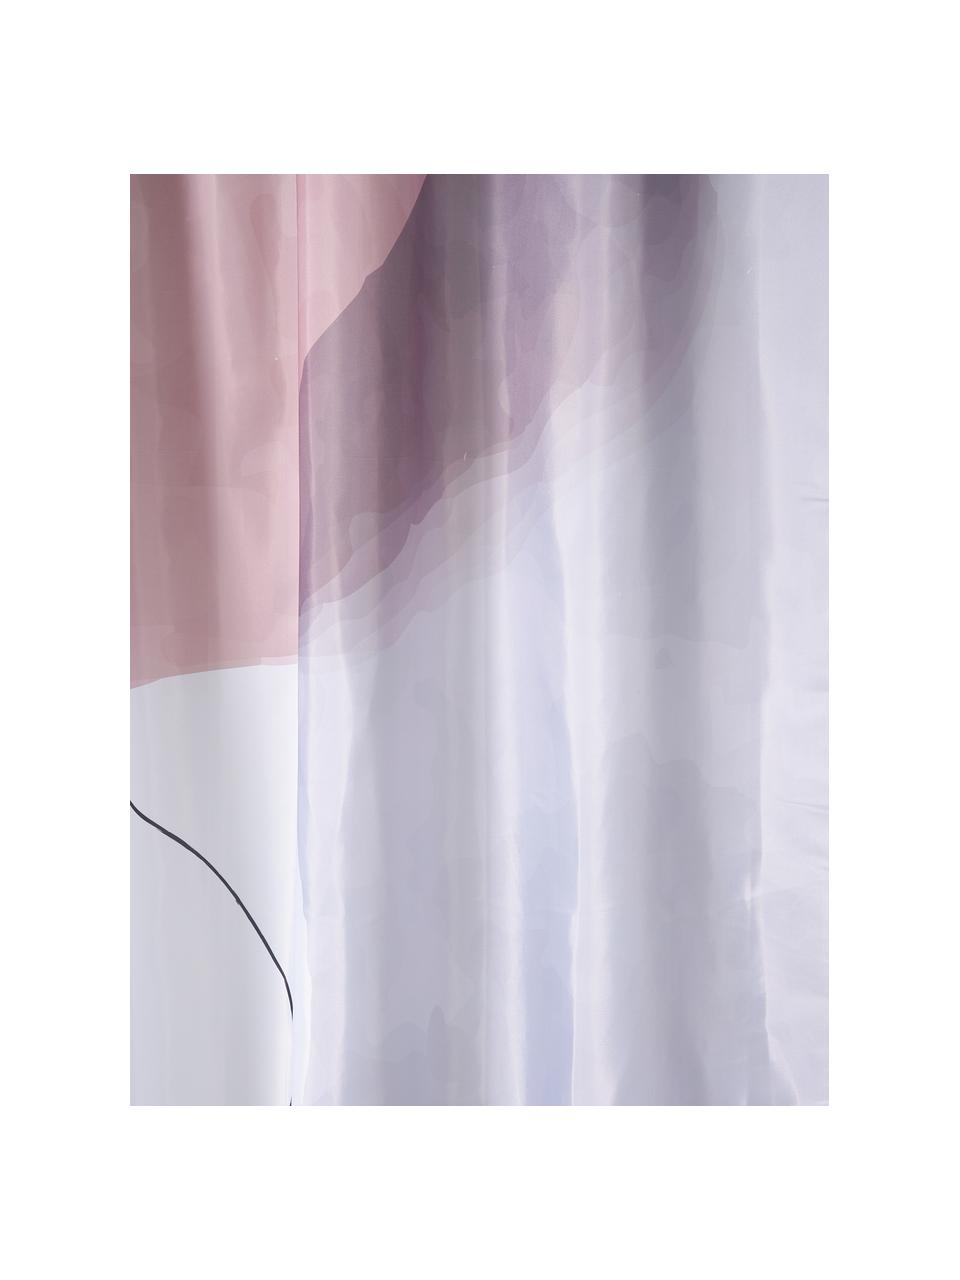 Duschvorhang Face mit One Line Zeichnung, 100% Polyester, Rosa, Weiss, Grau, Schwarz, B 180 x L 200 cm